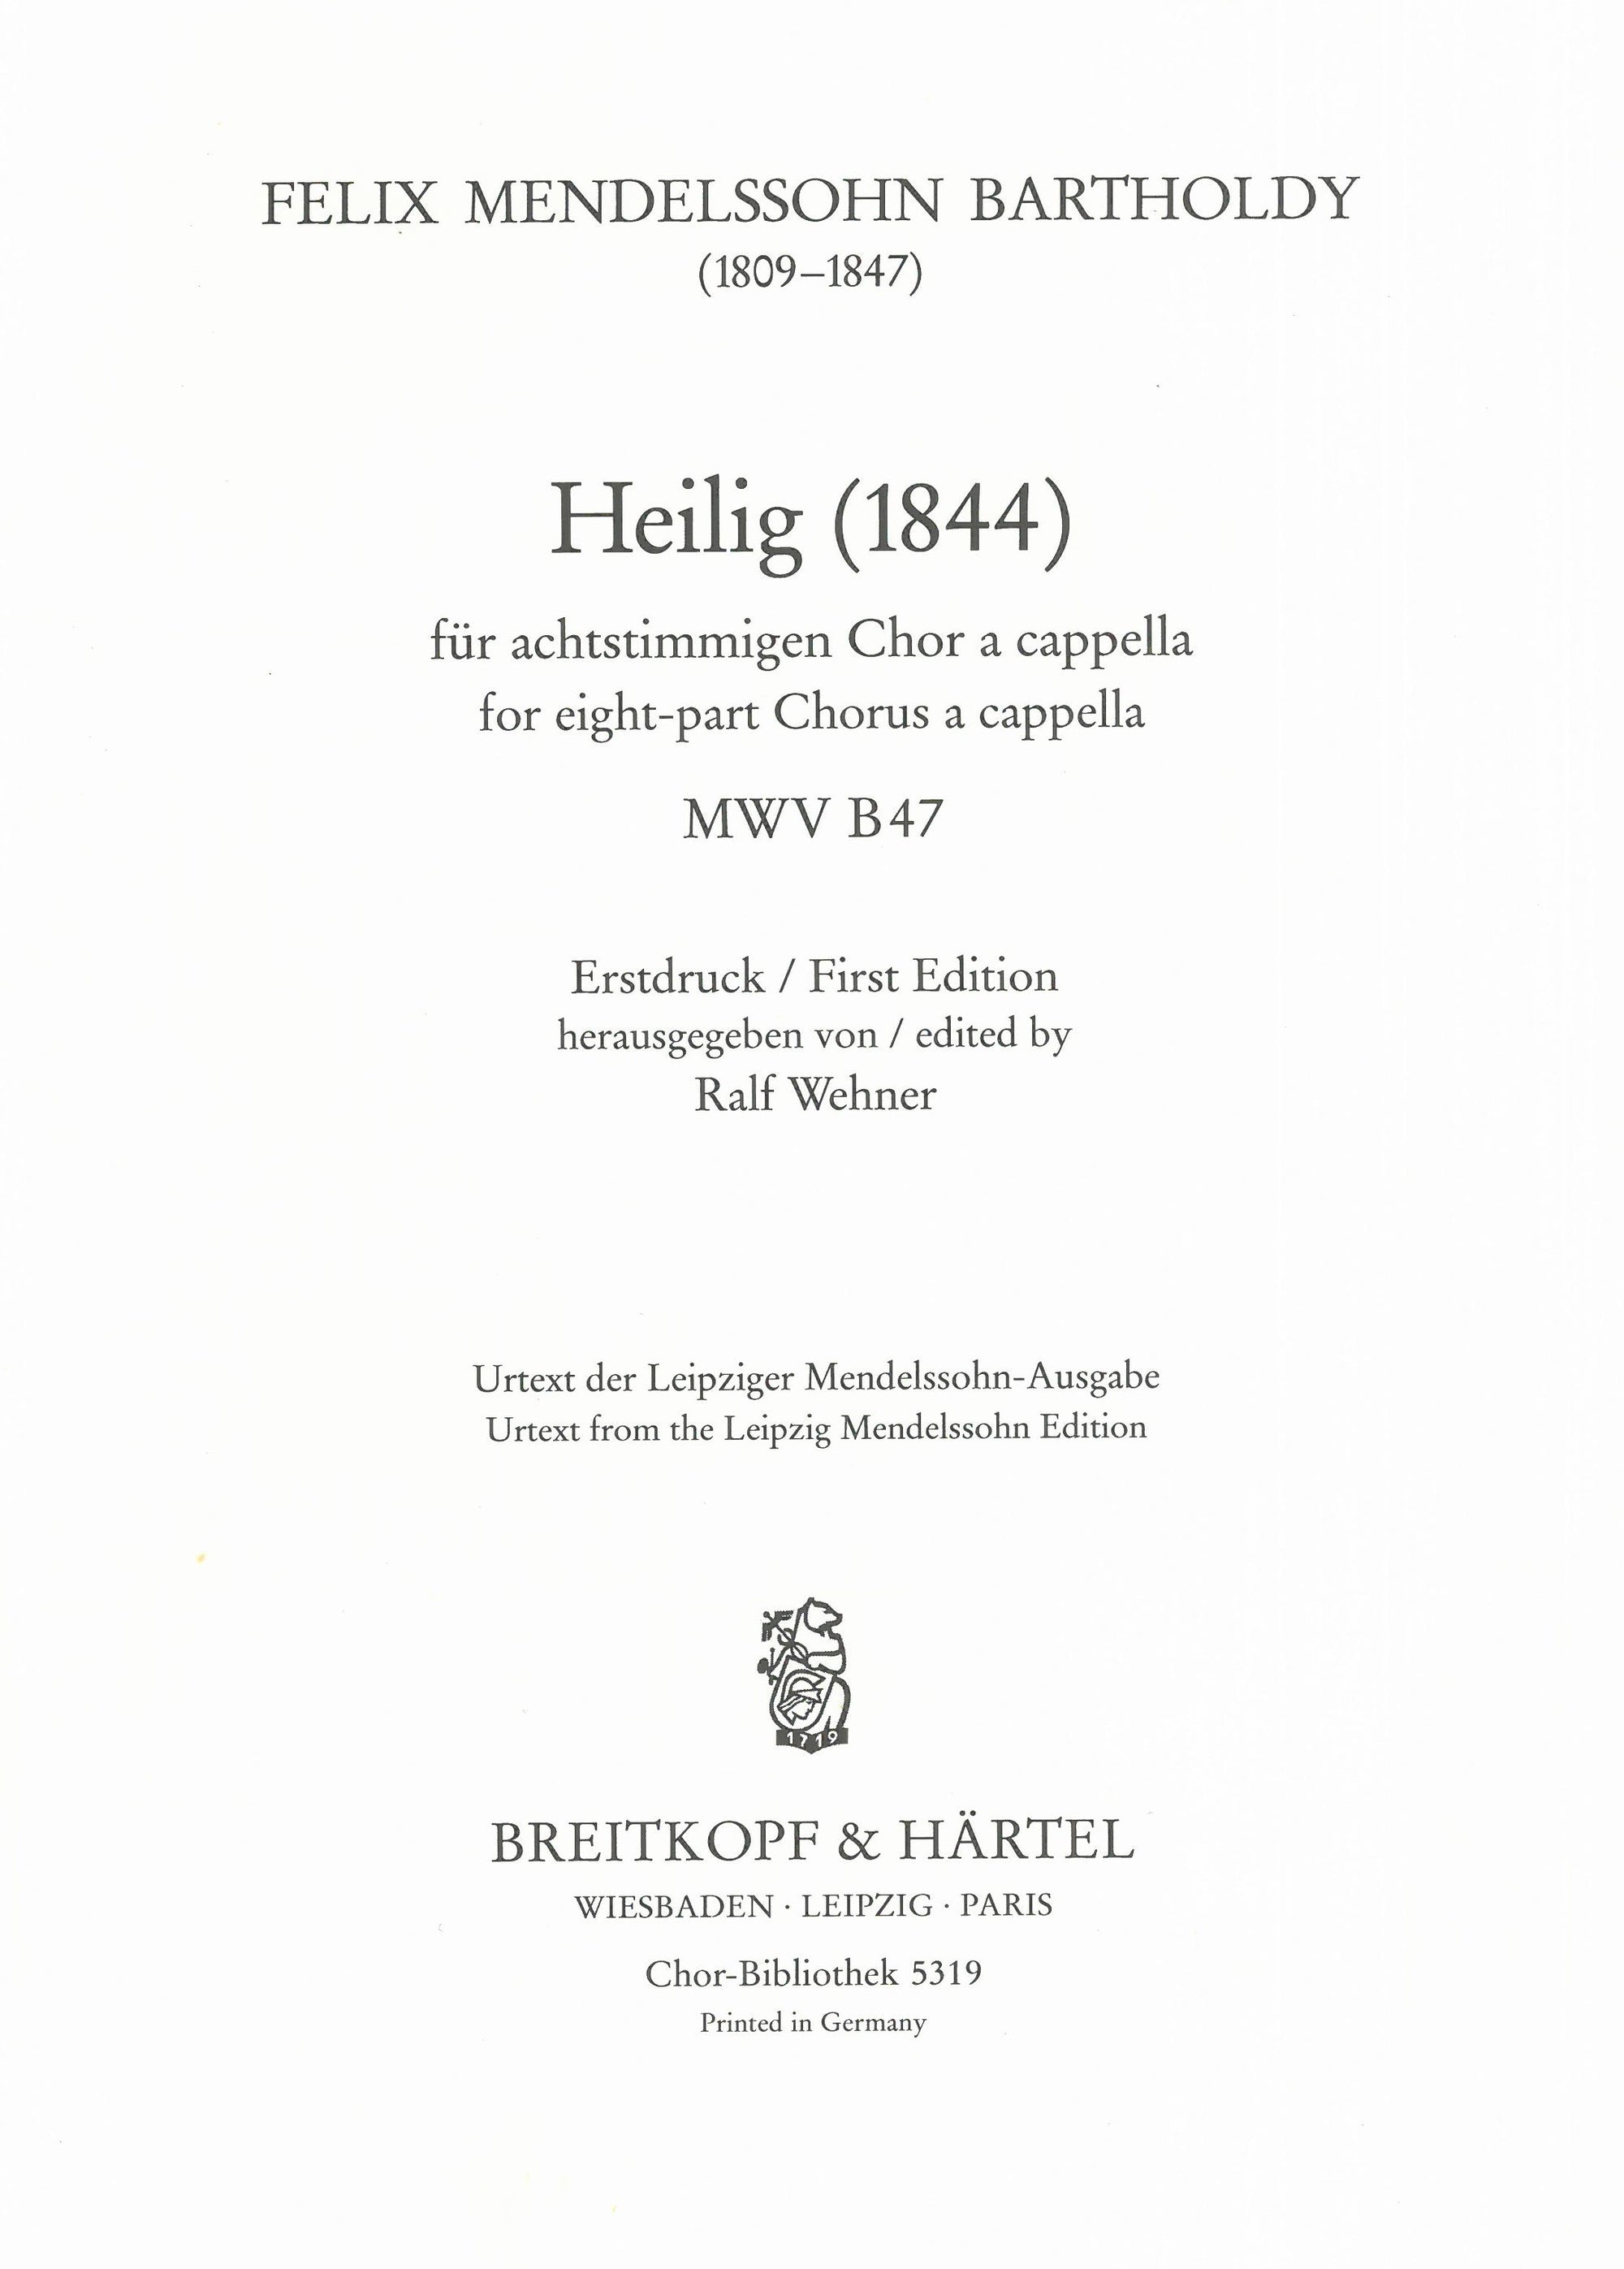 Mendelssohn: Heilig (1844), MWV B 47